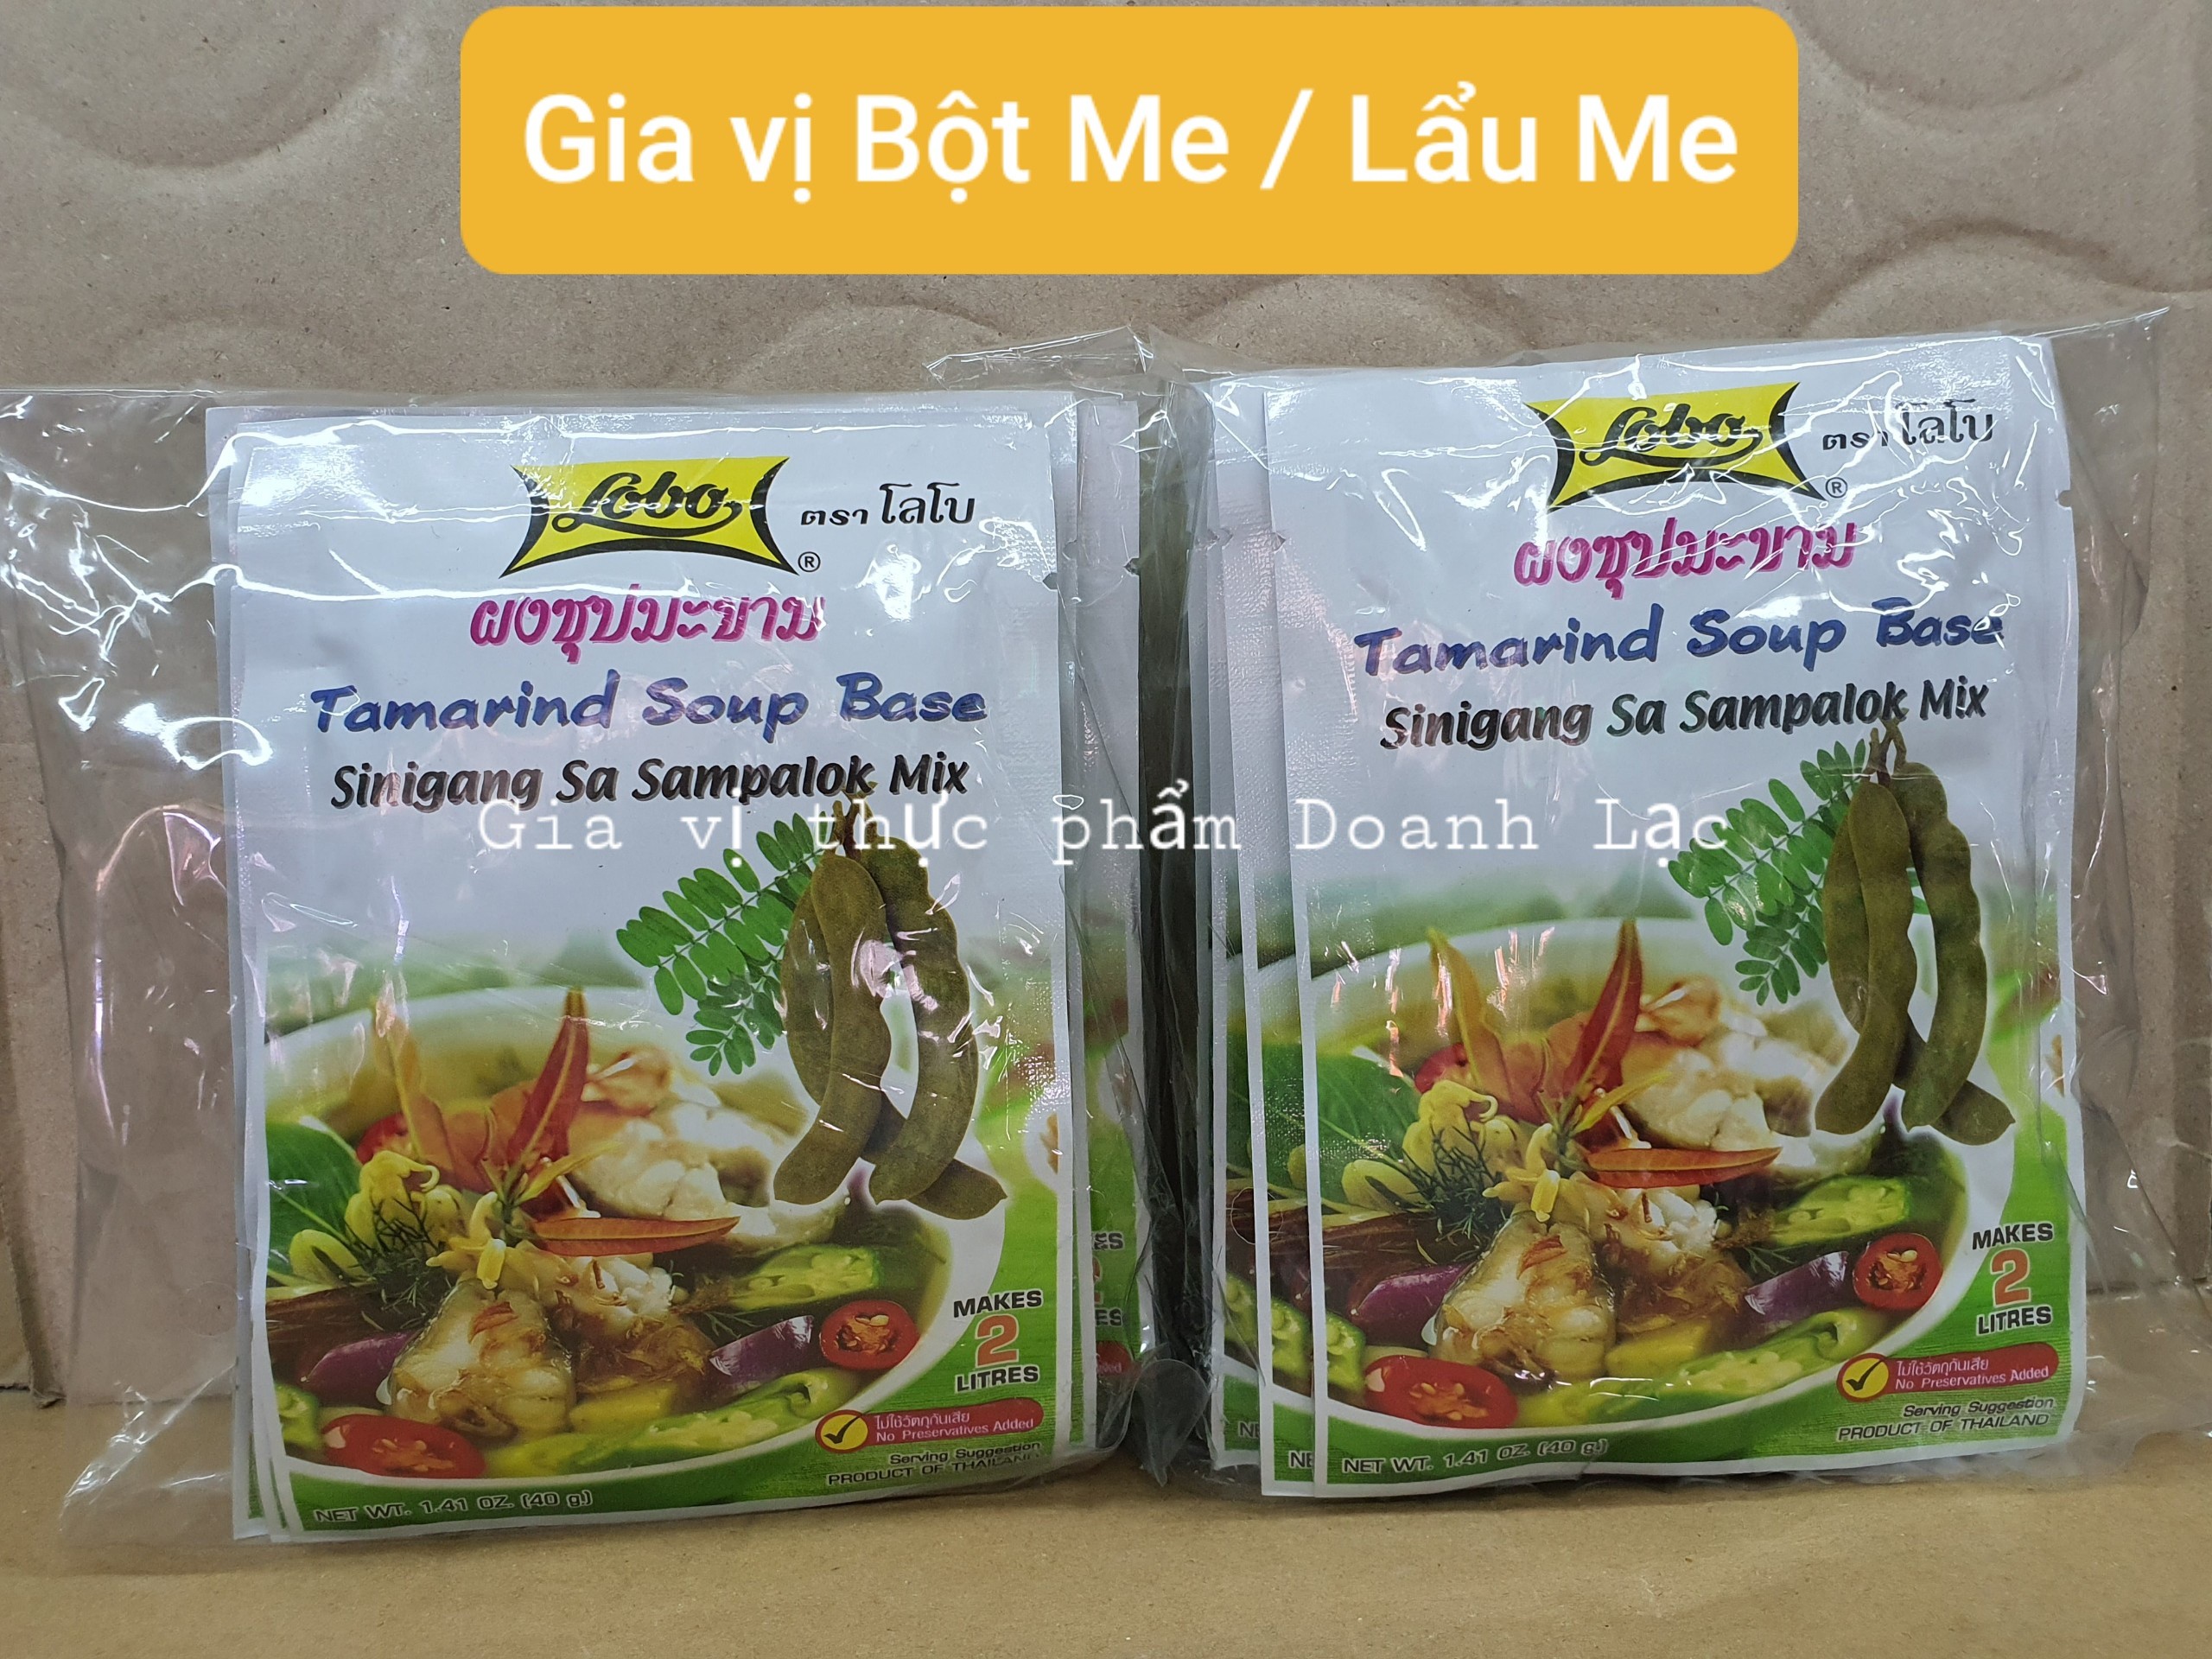 [Lobo Thailand] Gói Gia vị bột me nấu canh chua / Lẩu me 40gr. Sinigang Sa Sampalok Mix 💯 Nhập khẩu chính hãng